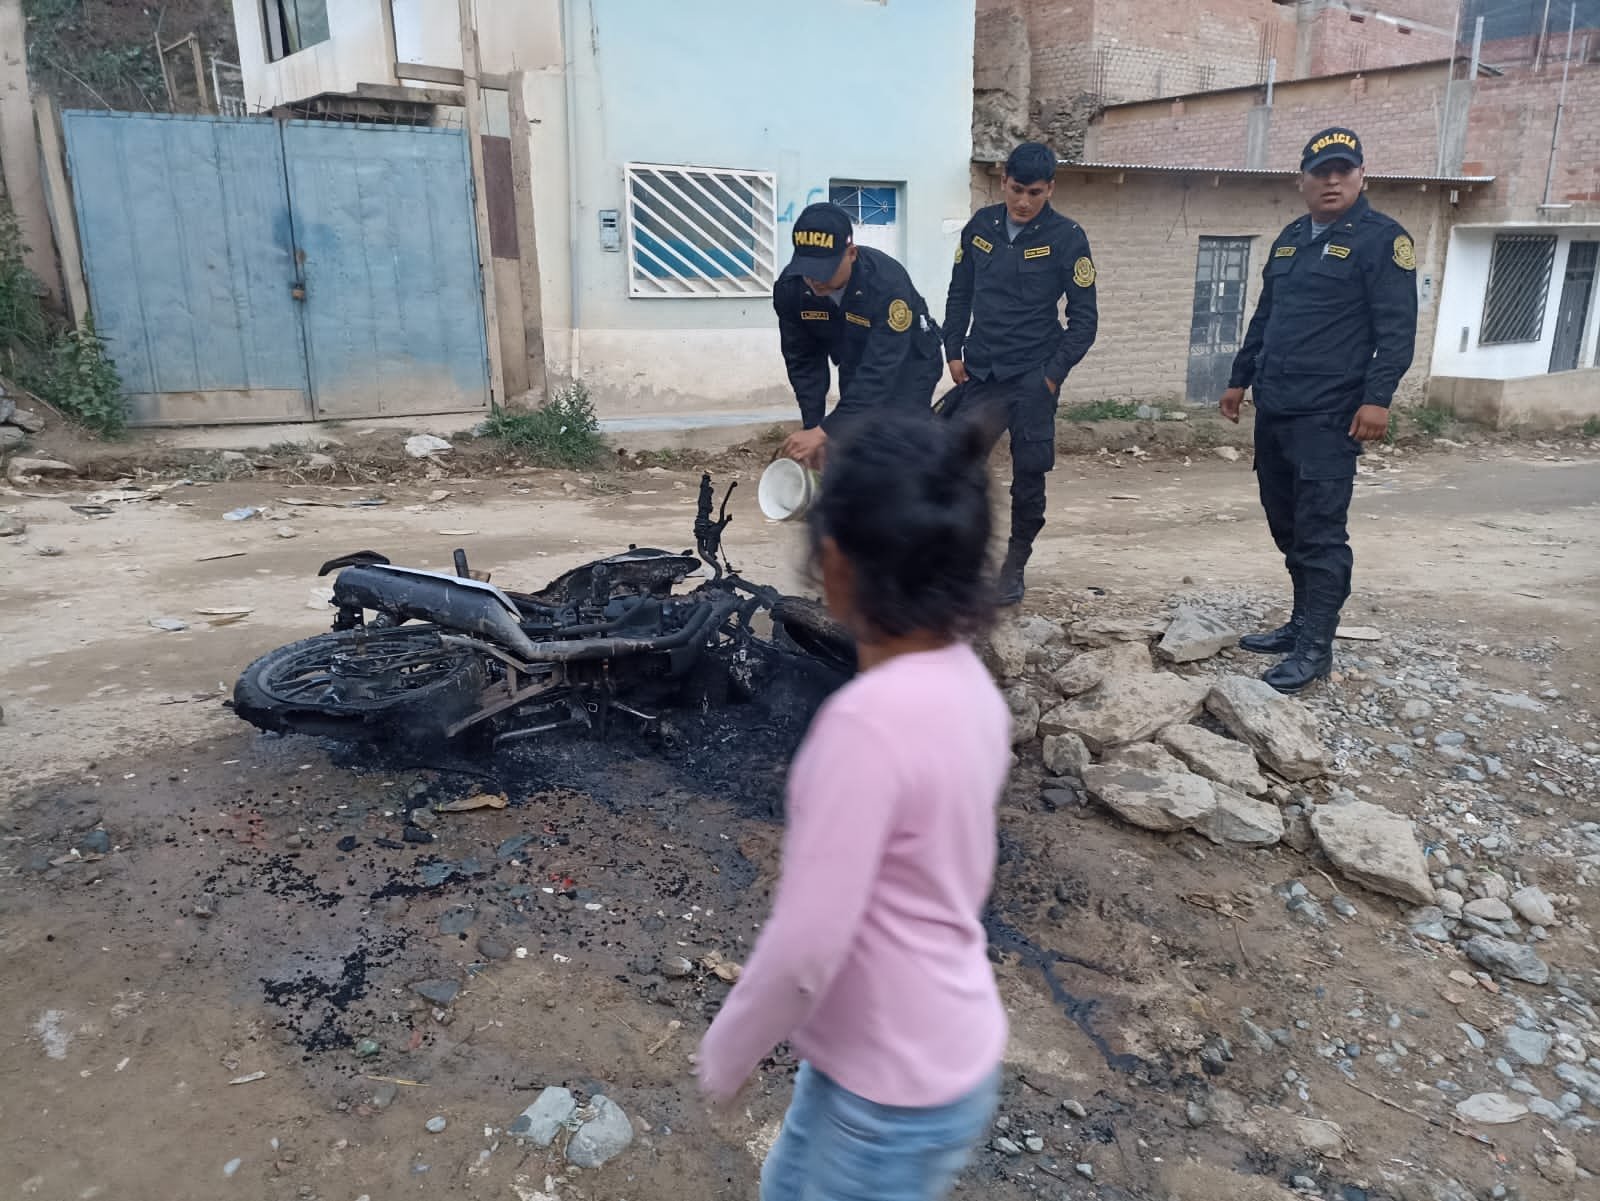 Vecinos toman justicia pro sus manos y queman moto usada por asaltantes